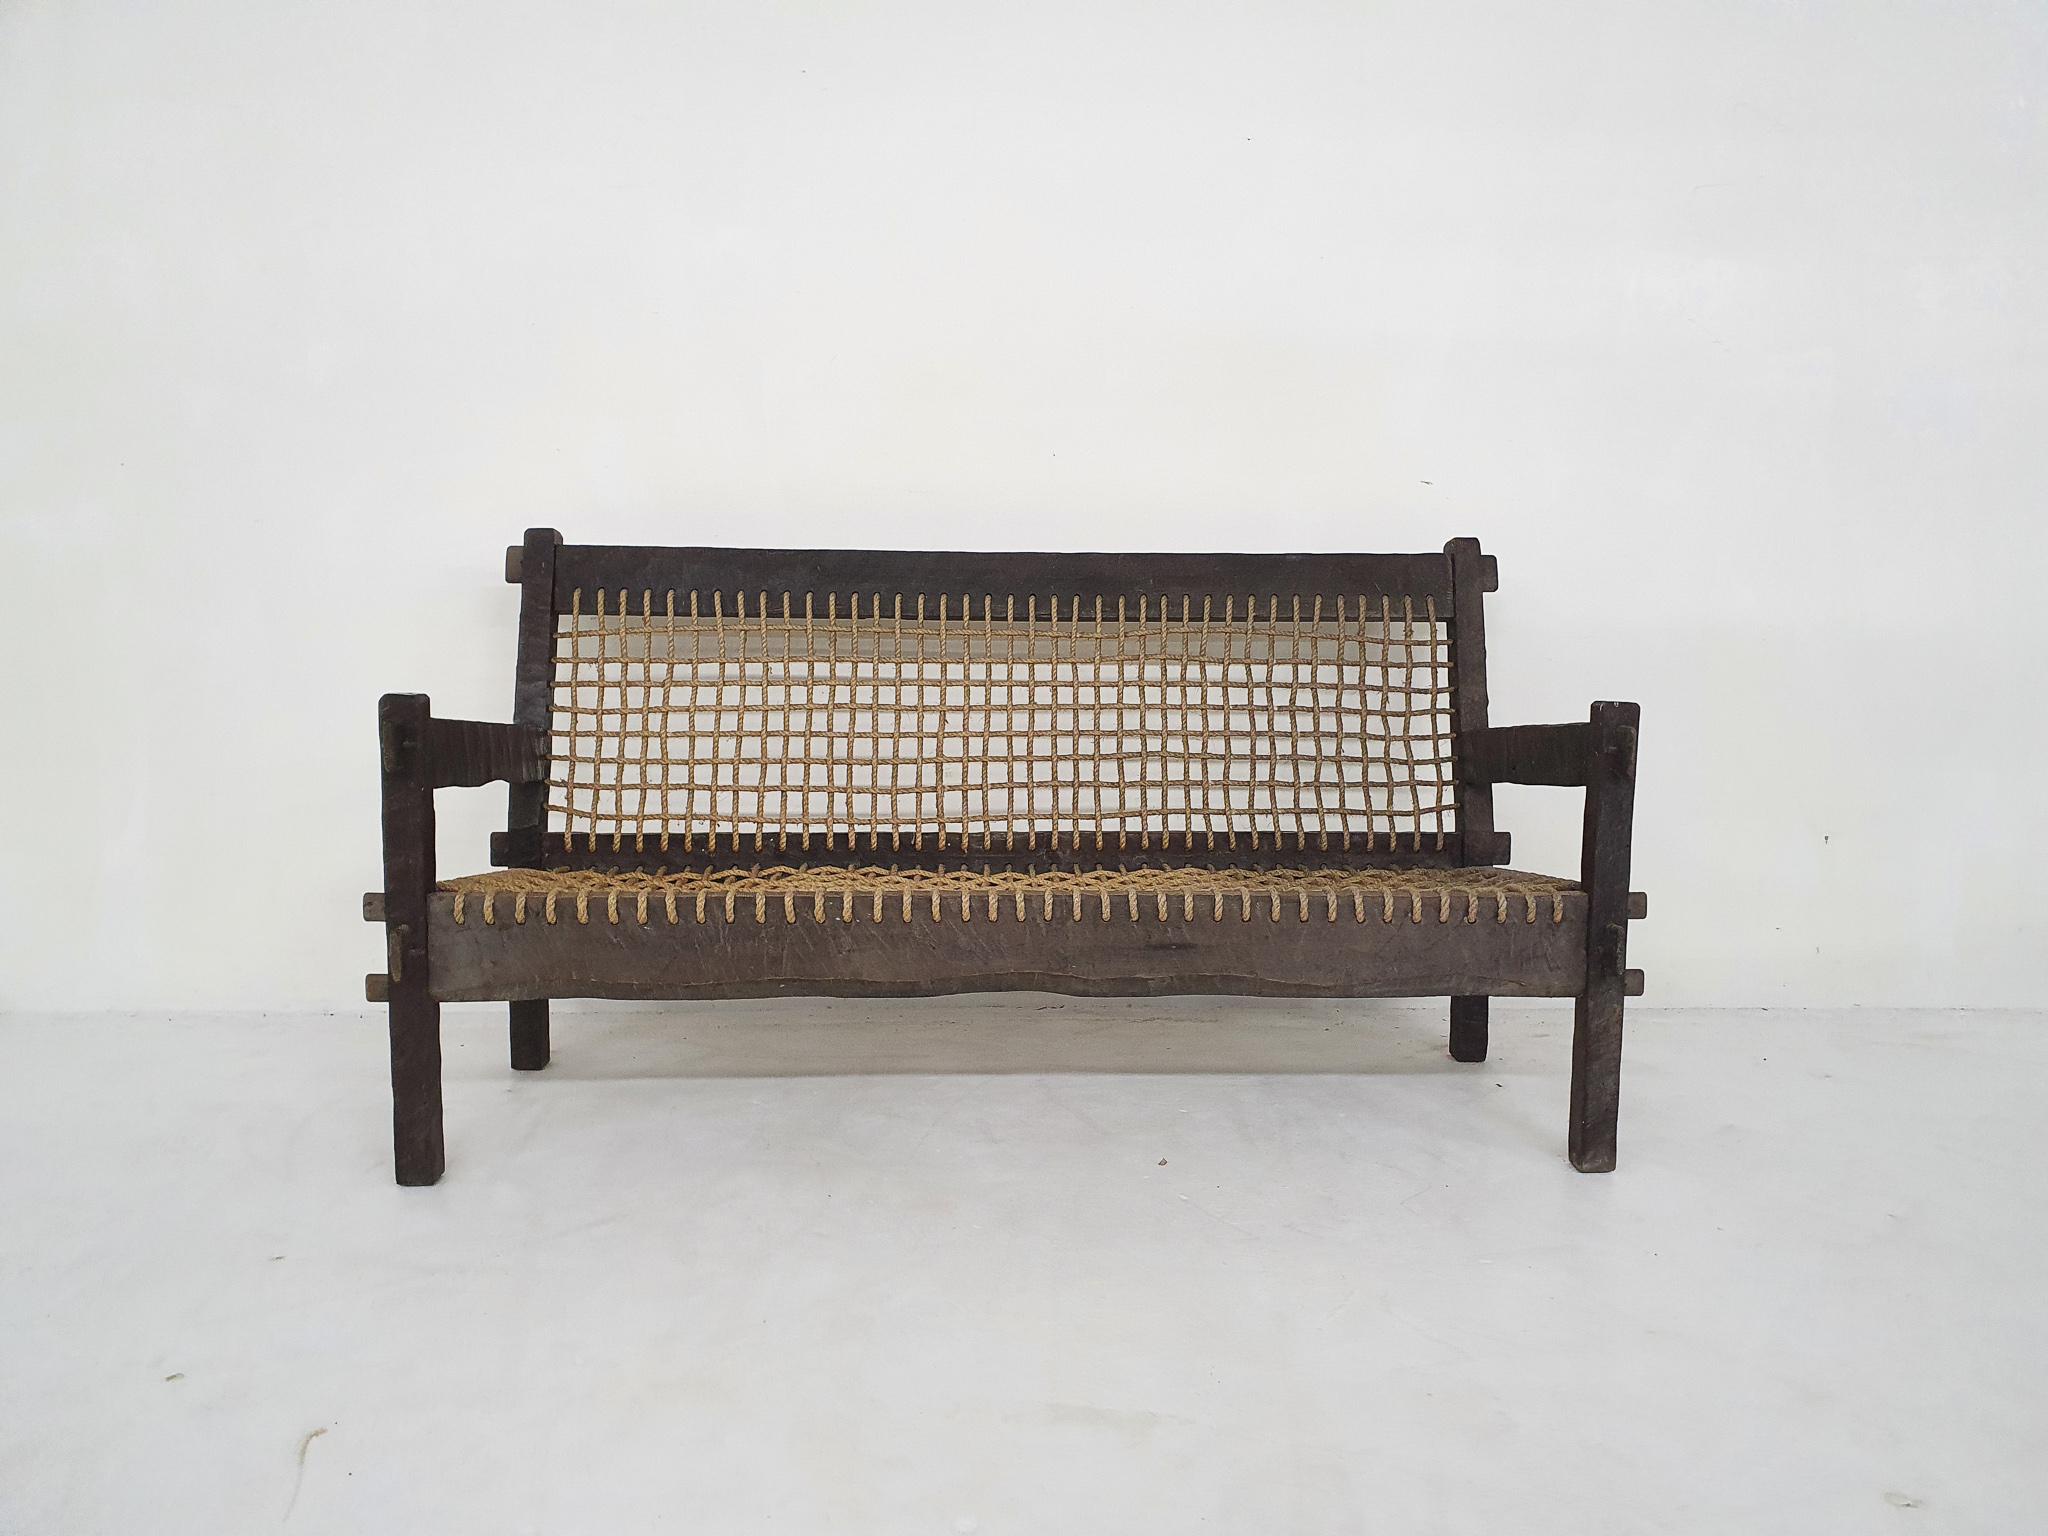 Schönes handgeschnitztes Holzsofa mit Sitzfläche und Rückenlehne aus Seil.
